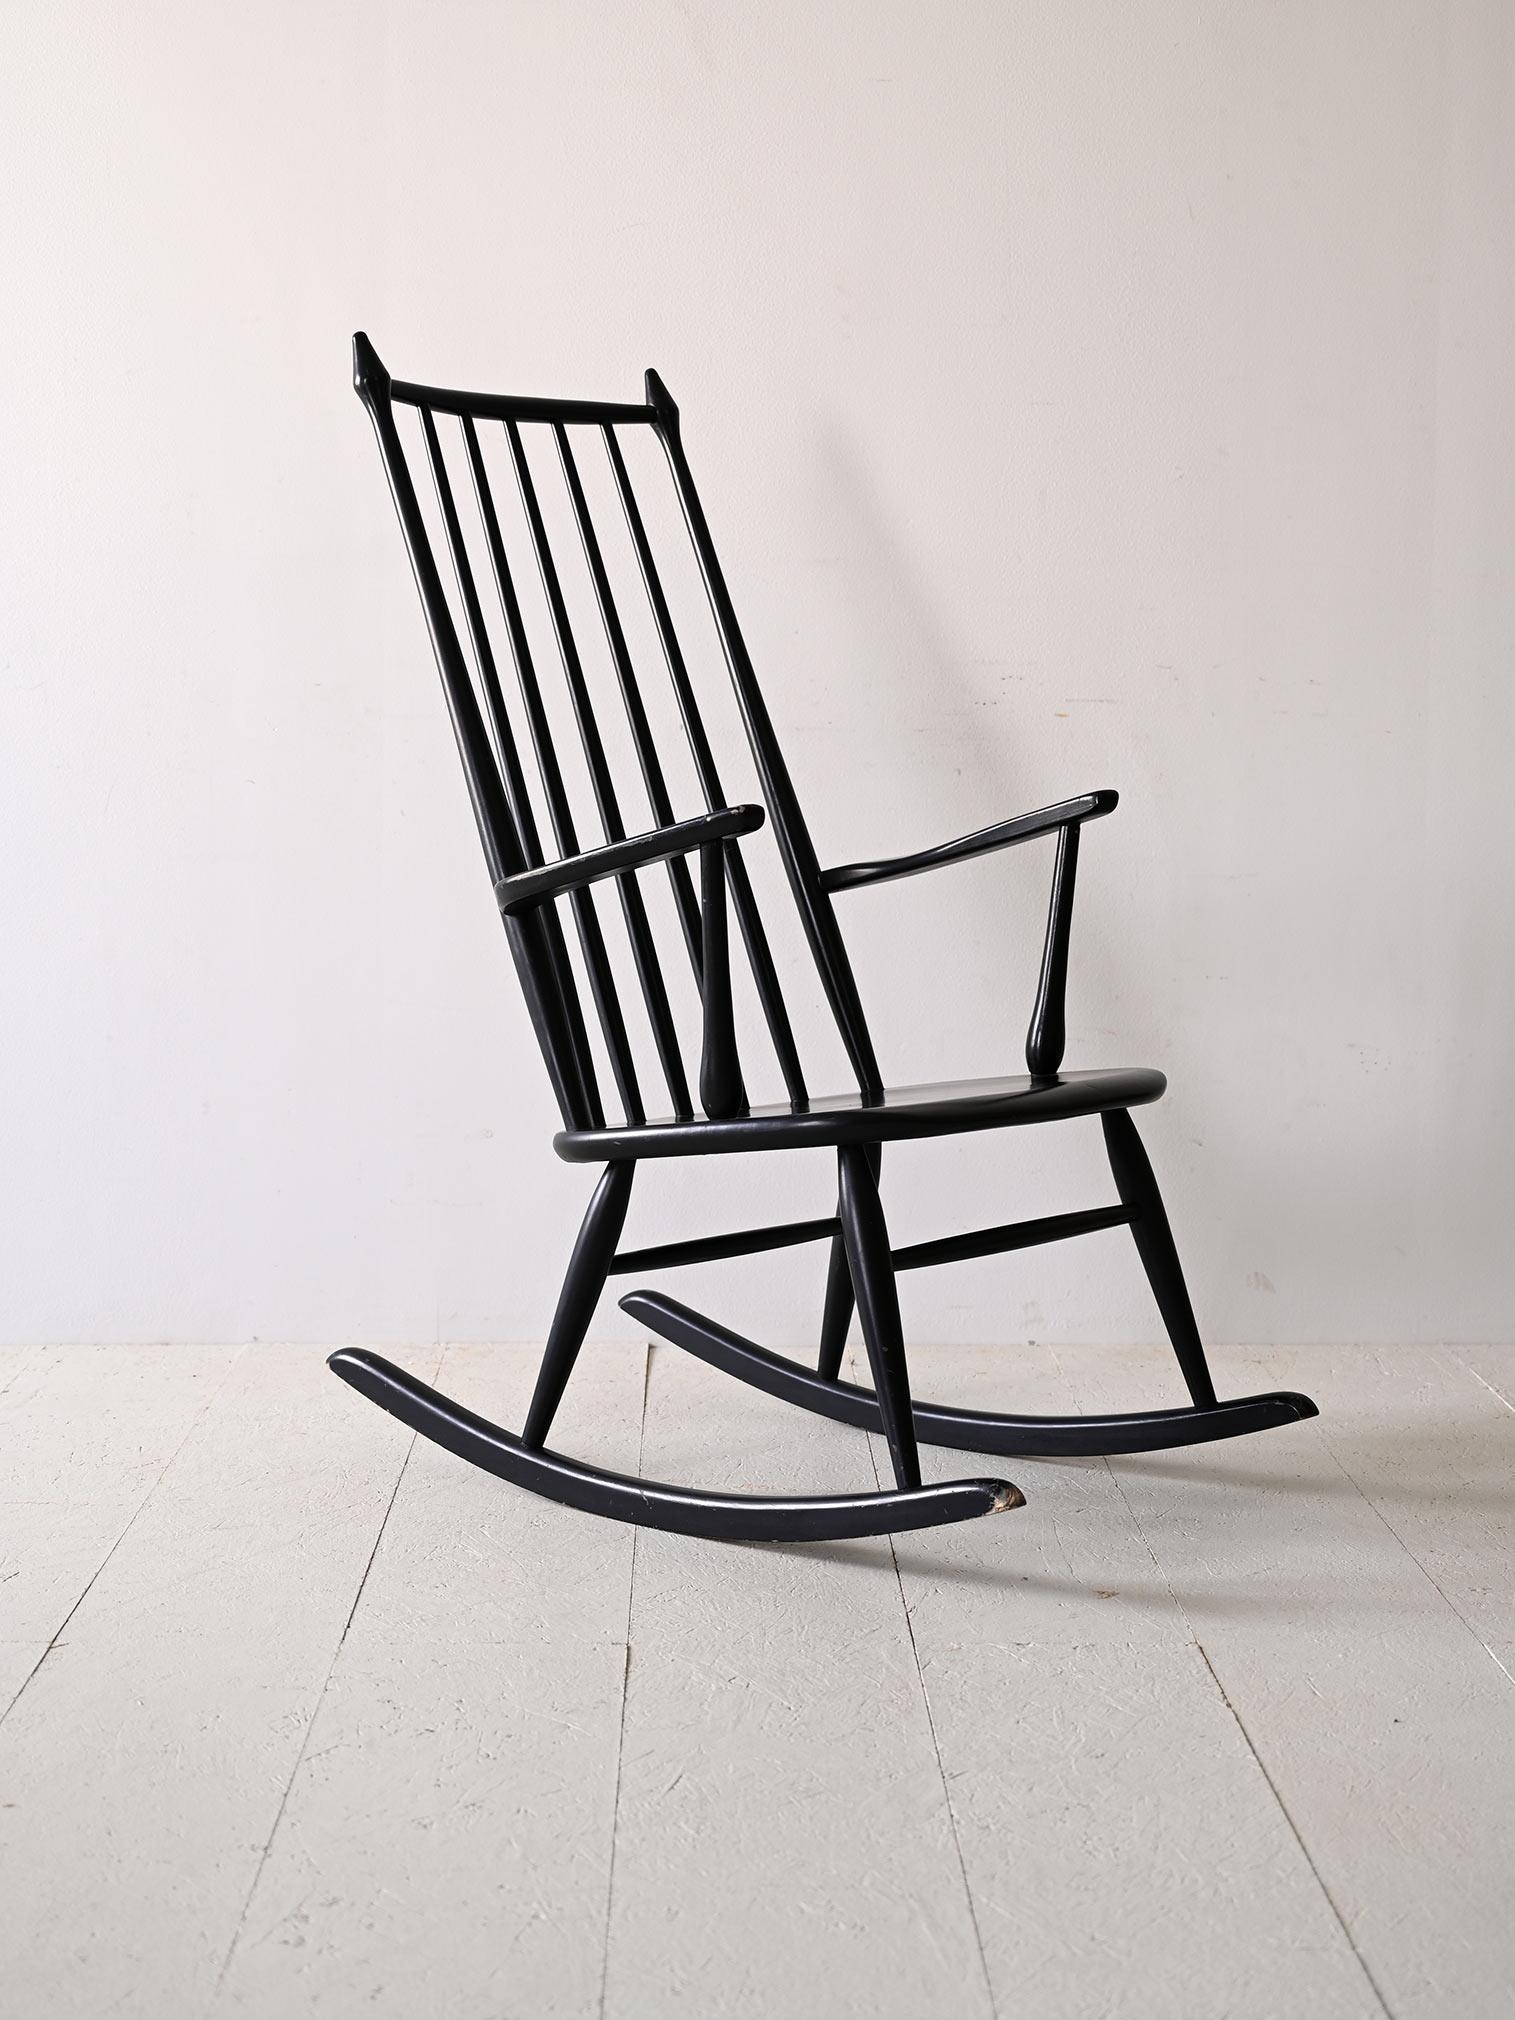 Chaise à bascule scandinave vintage.

Ce rocking-chair original des années 1960, entièrement en bois et peint en noir, représente l'élégance nordique avec une touche de modernité. Les élégants accoudoirs arrondis apportent un confort et une touche